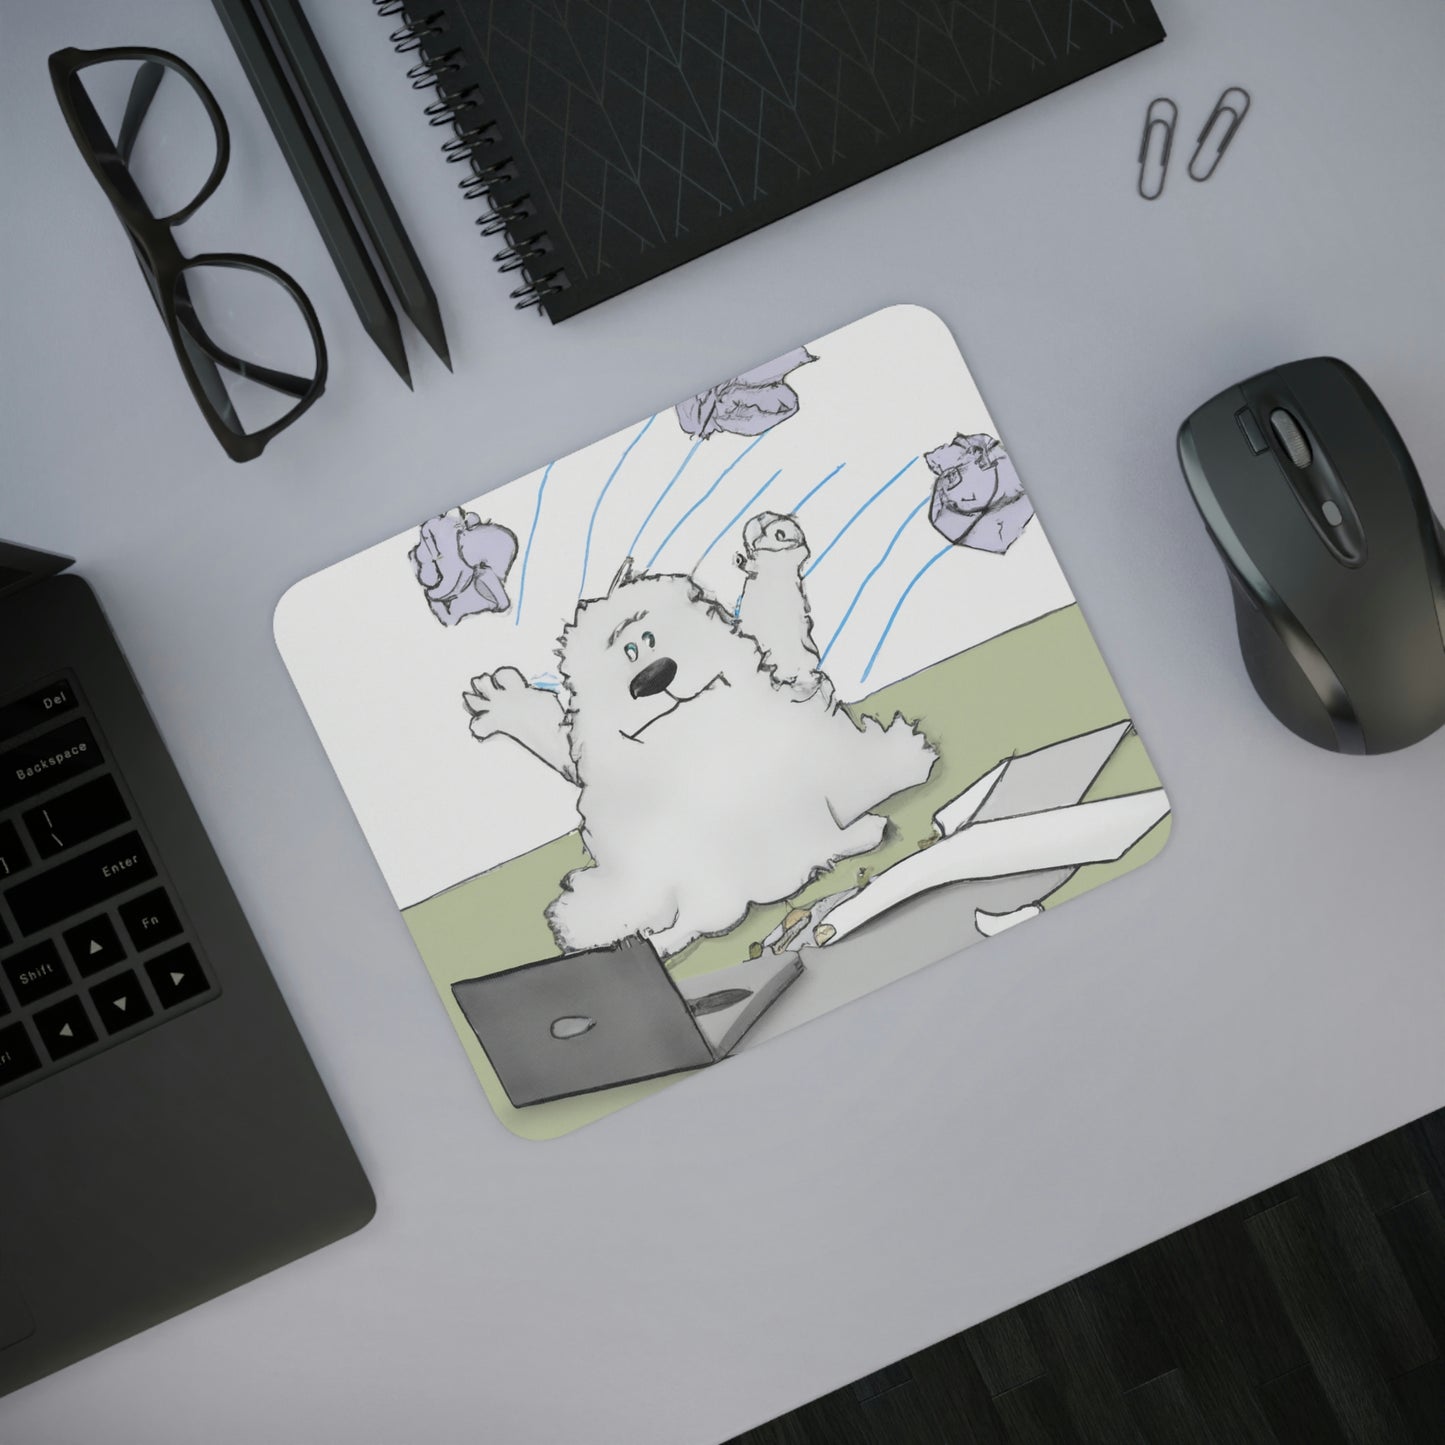 Samoyed Office Monster Desk Mouse Pad